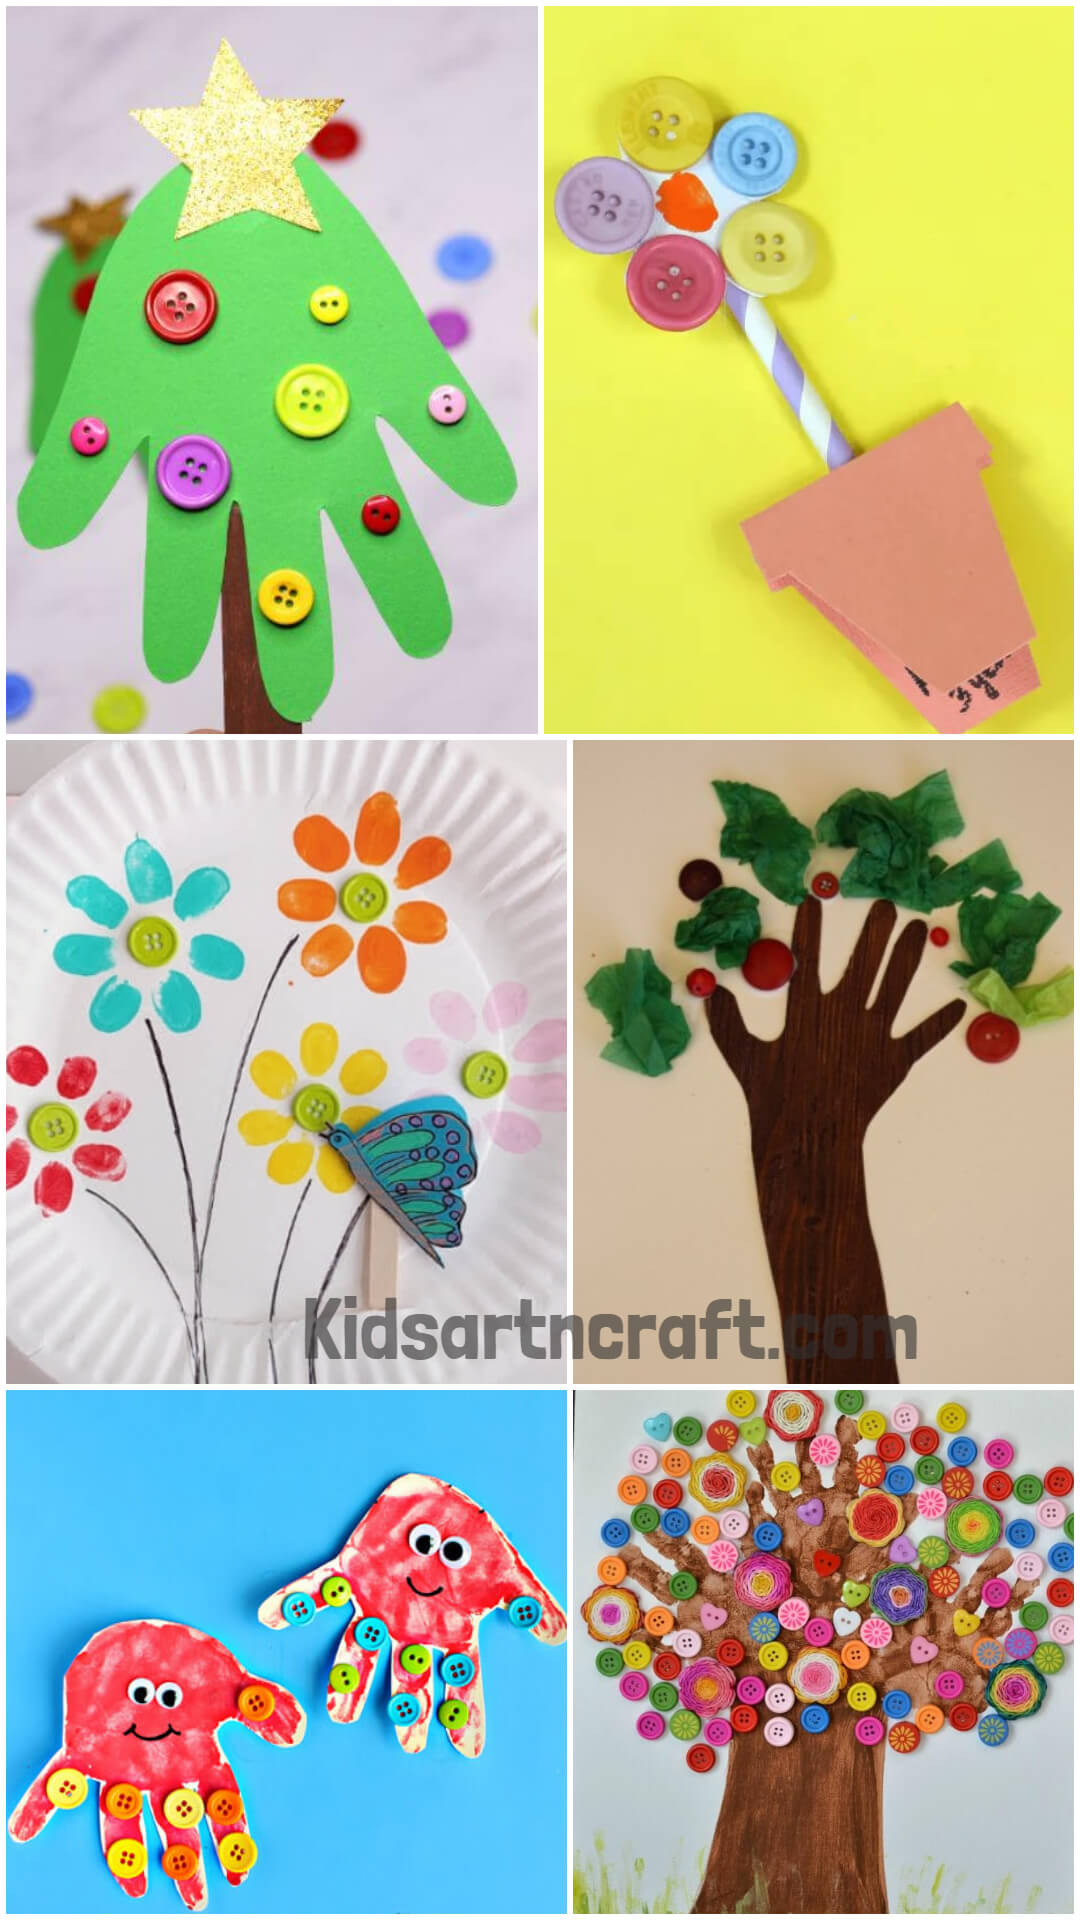 Fingerprint & Handprint button craft idea for kids